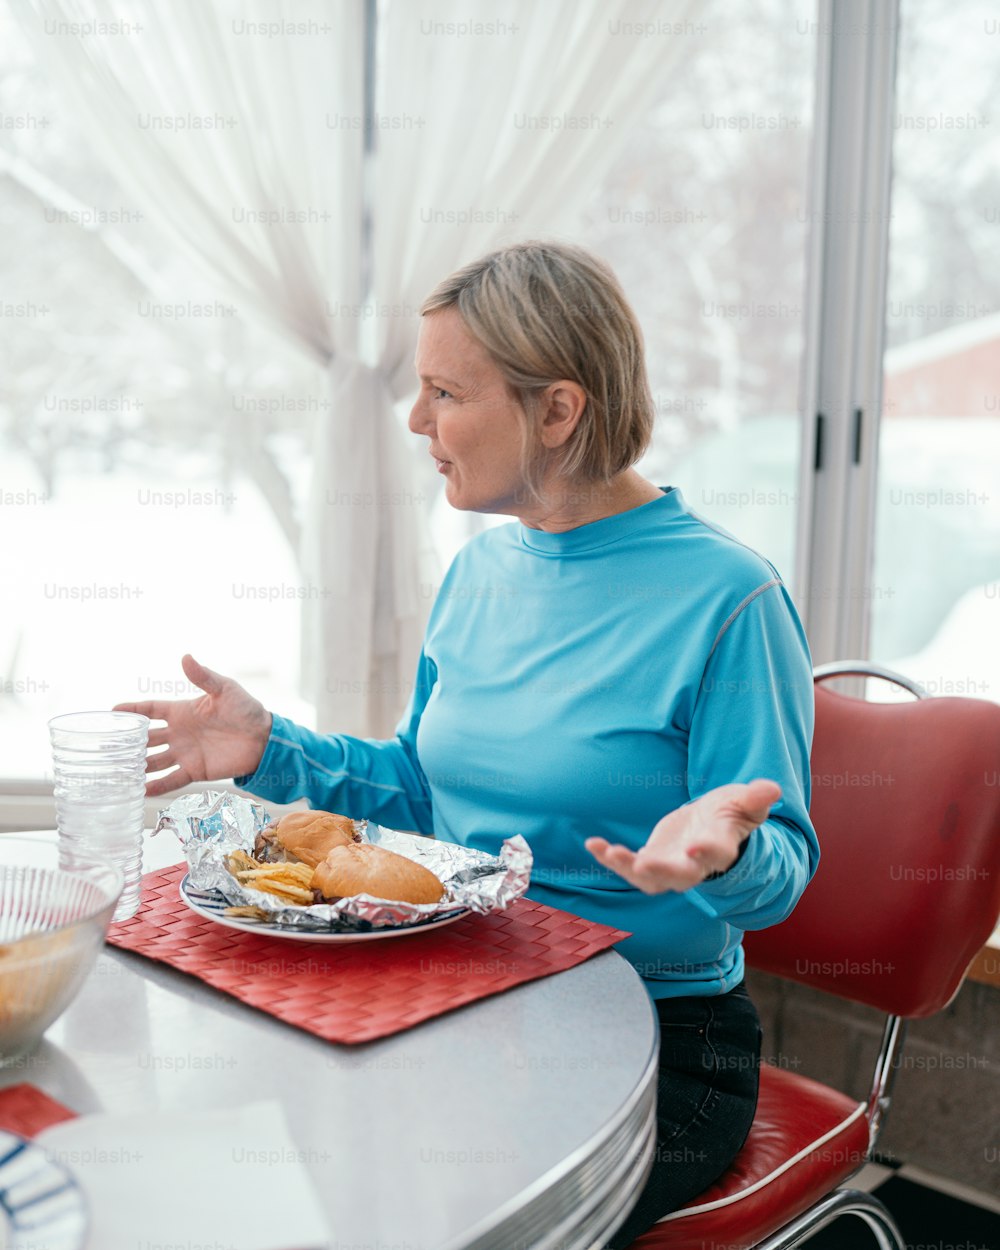 食べ物の皿を持ってテーブルに座っている女性